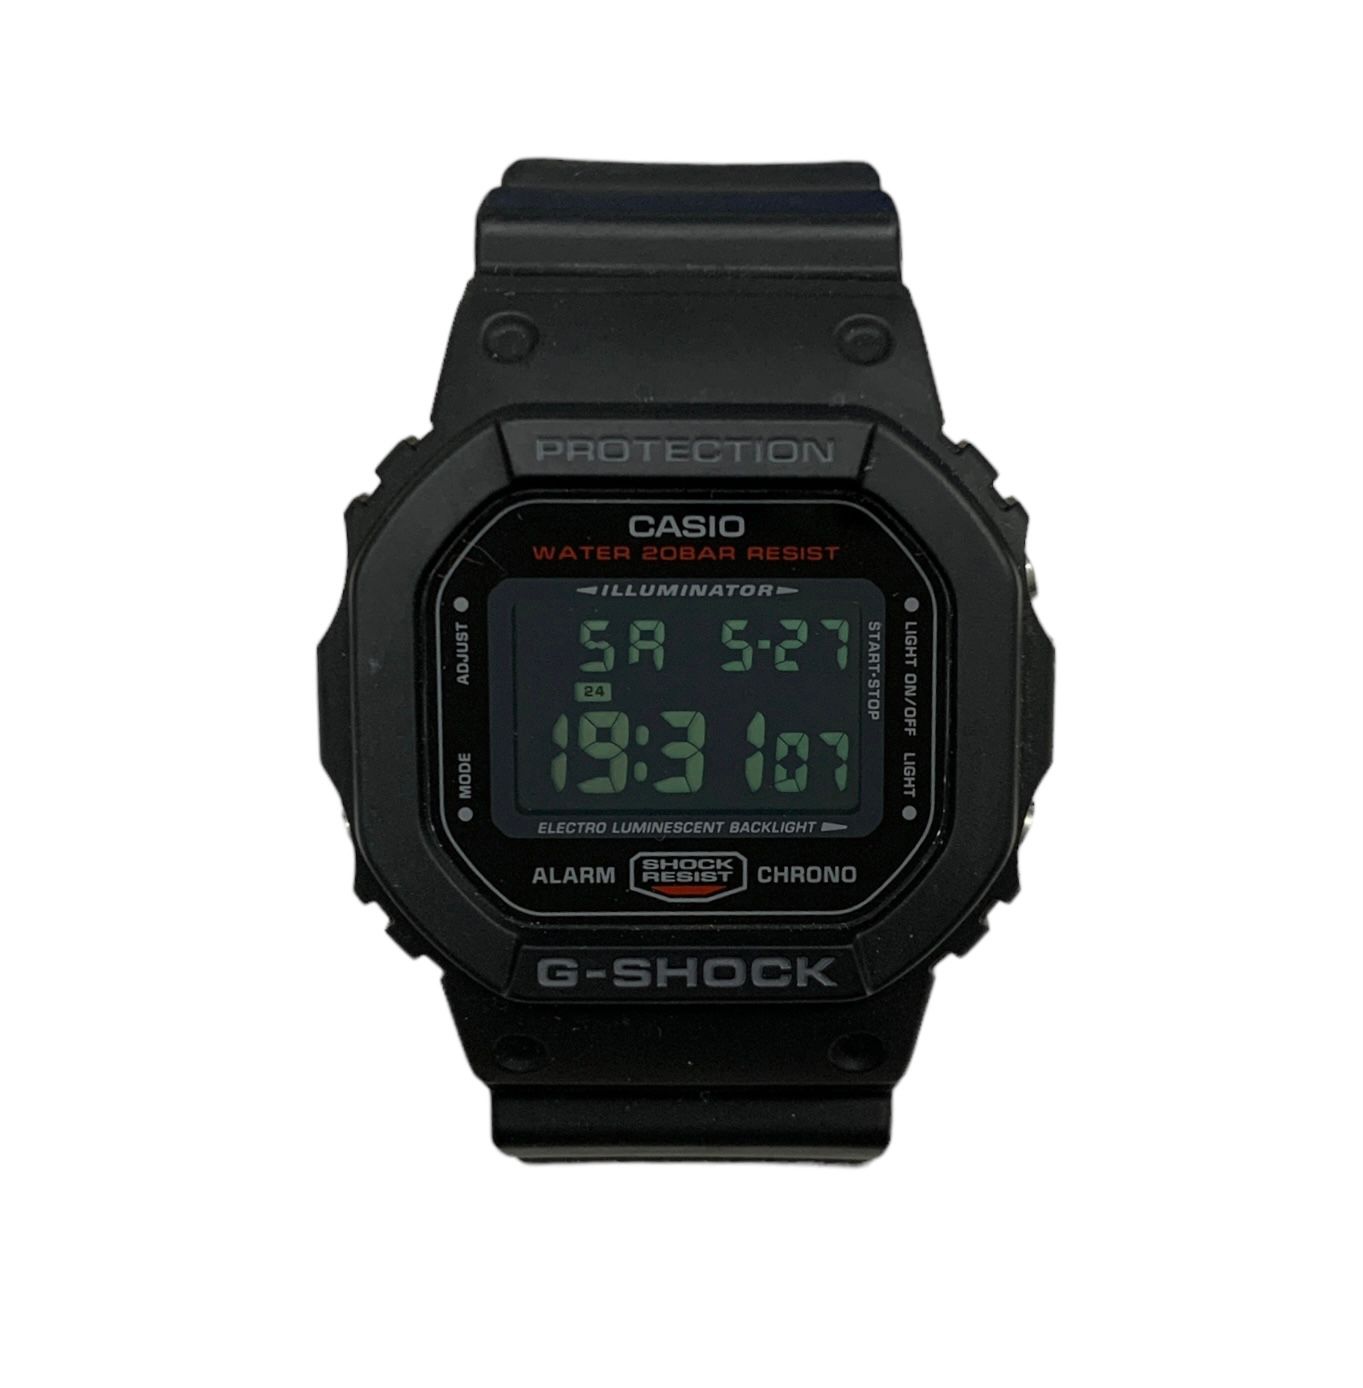 CASIO (カシオ) G-SHOCK Gショック デジタル腕時計 DW-5600HR ブラック